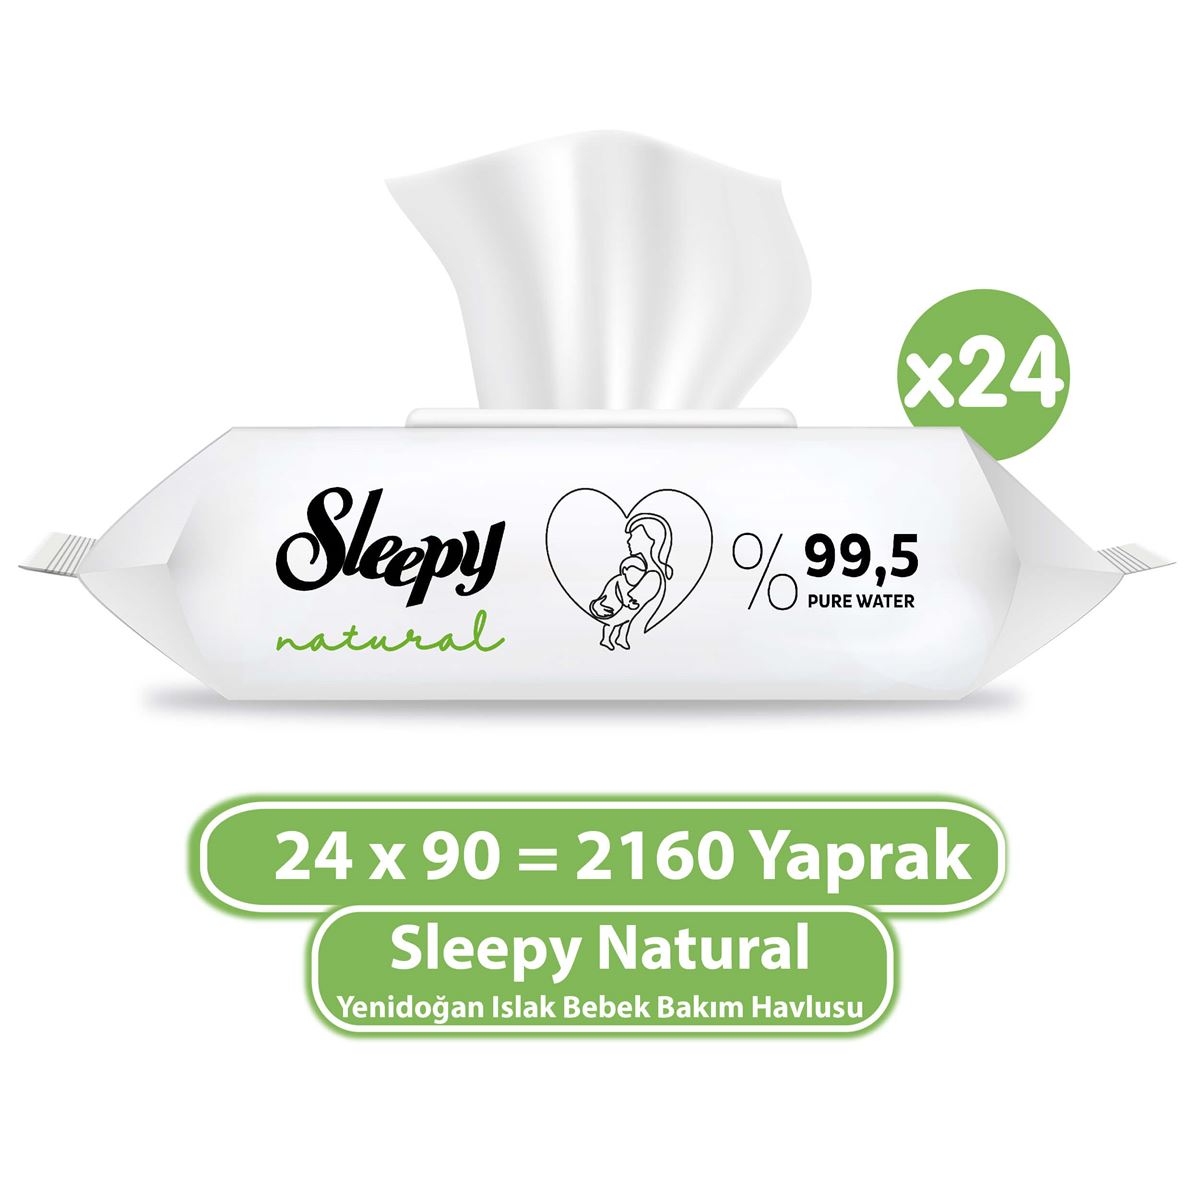 Sleepy Natural Yenidoğan Islak Bebek Bakım Havlusu 24x90 (2160 Yaprak)